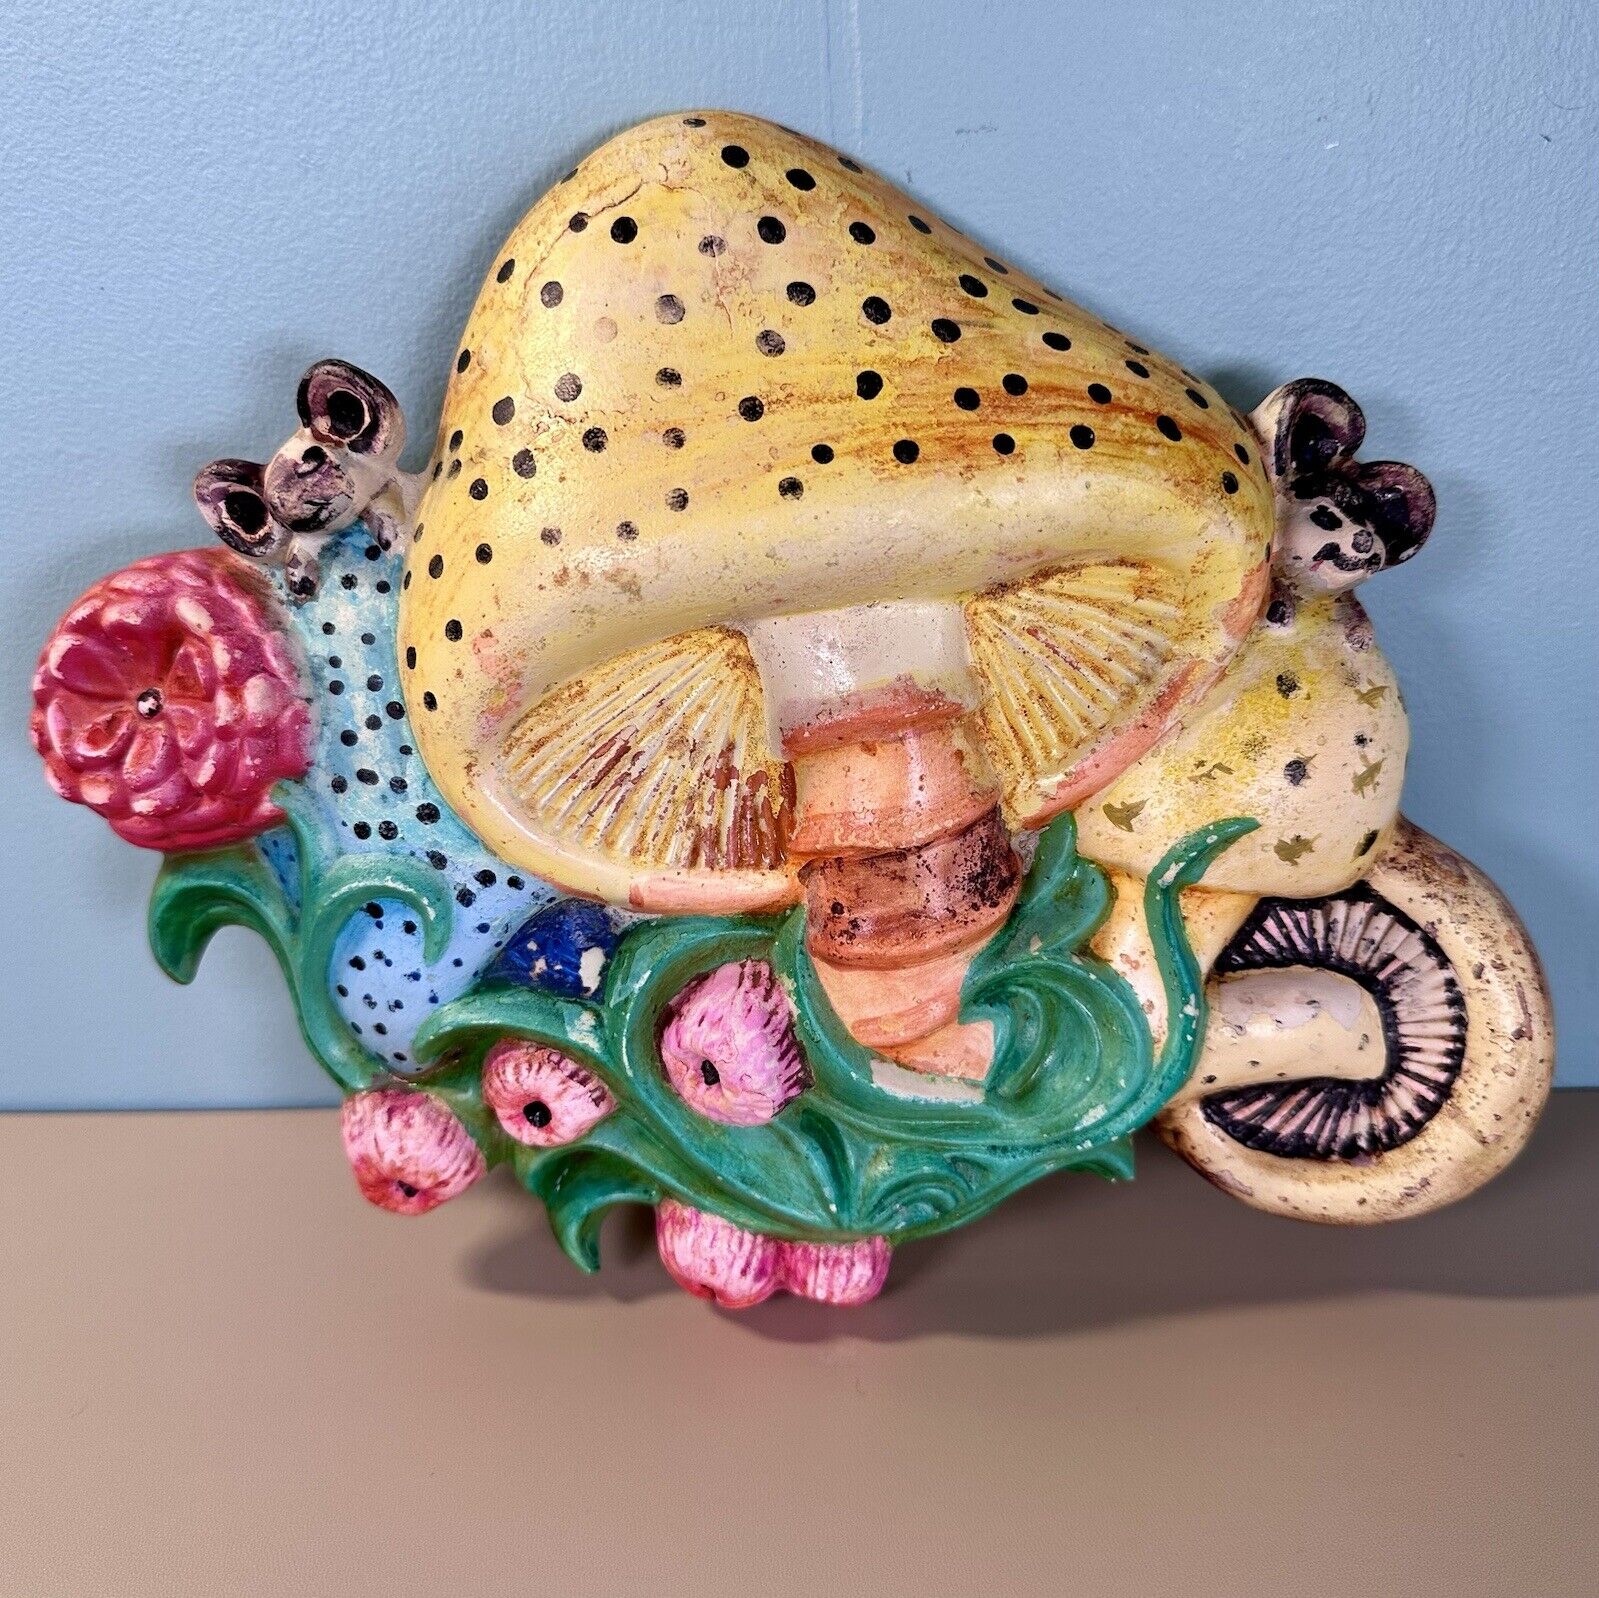 VTG Arnel’s 70s Ceramic Mushroom Toadstool Mouse 10” Wall Art Decor TLC See Desc